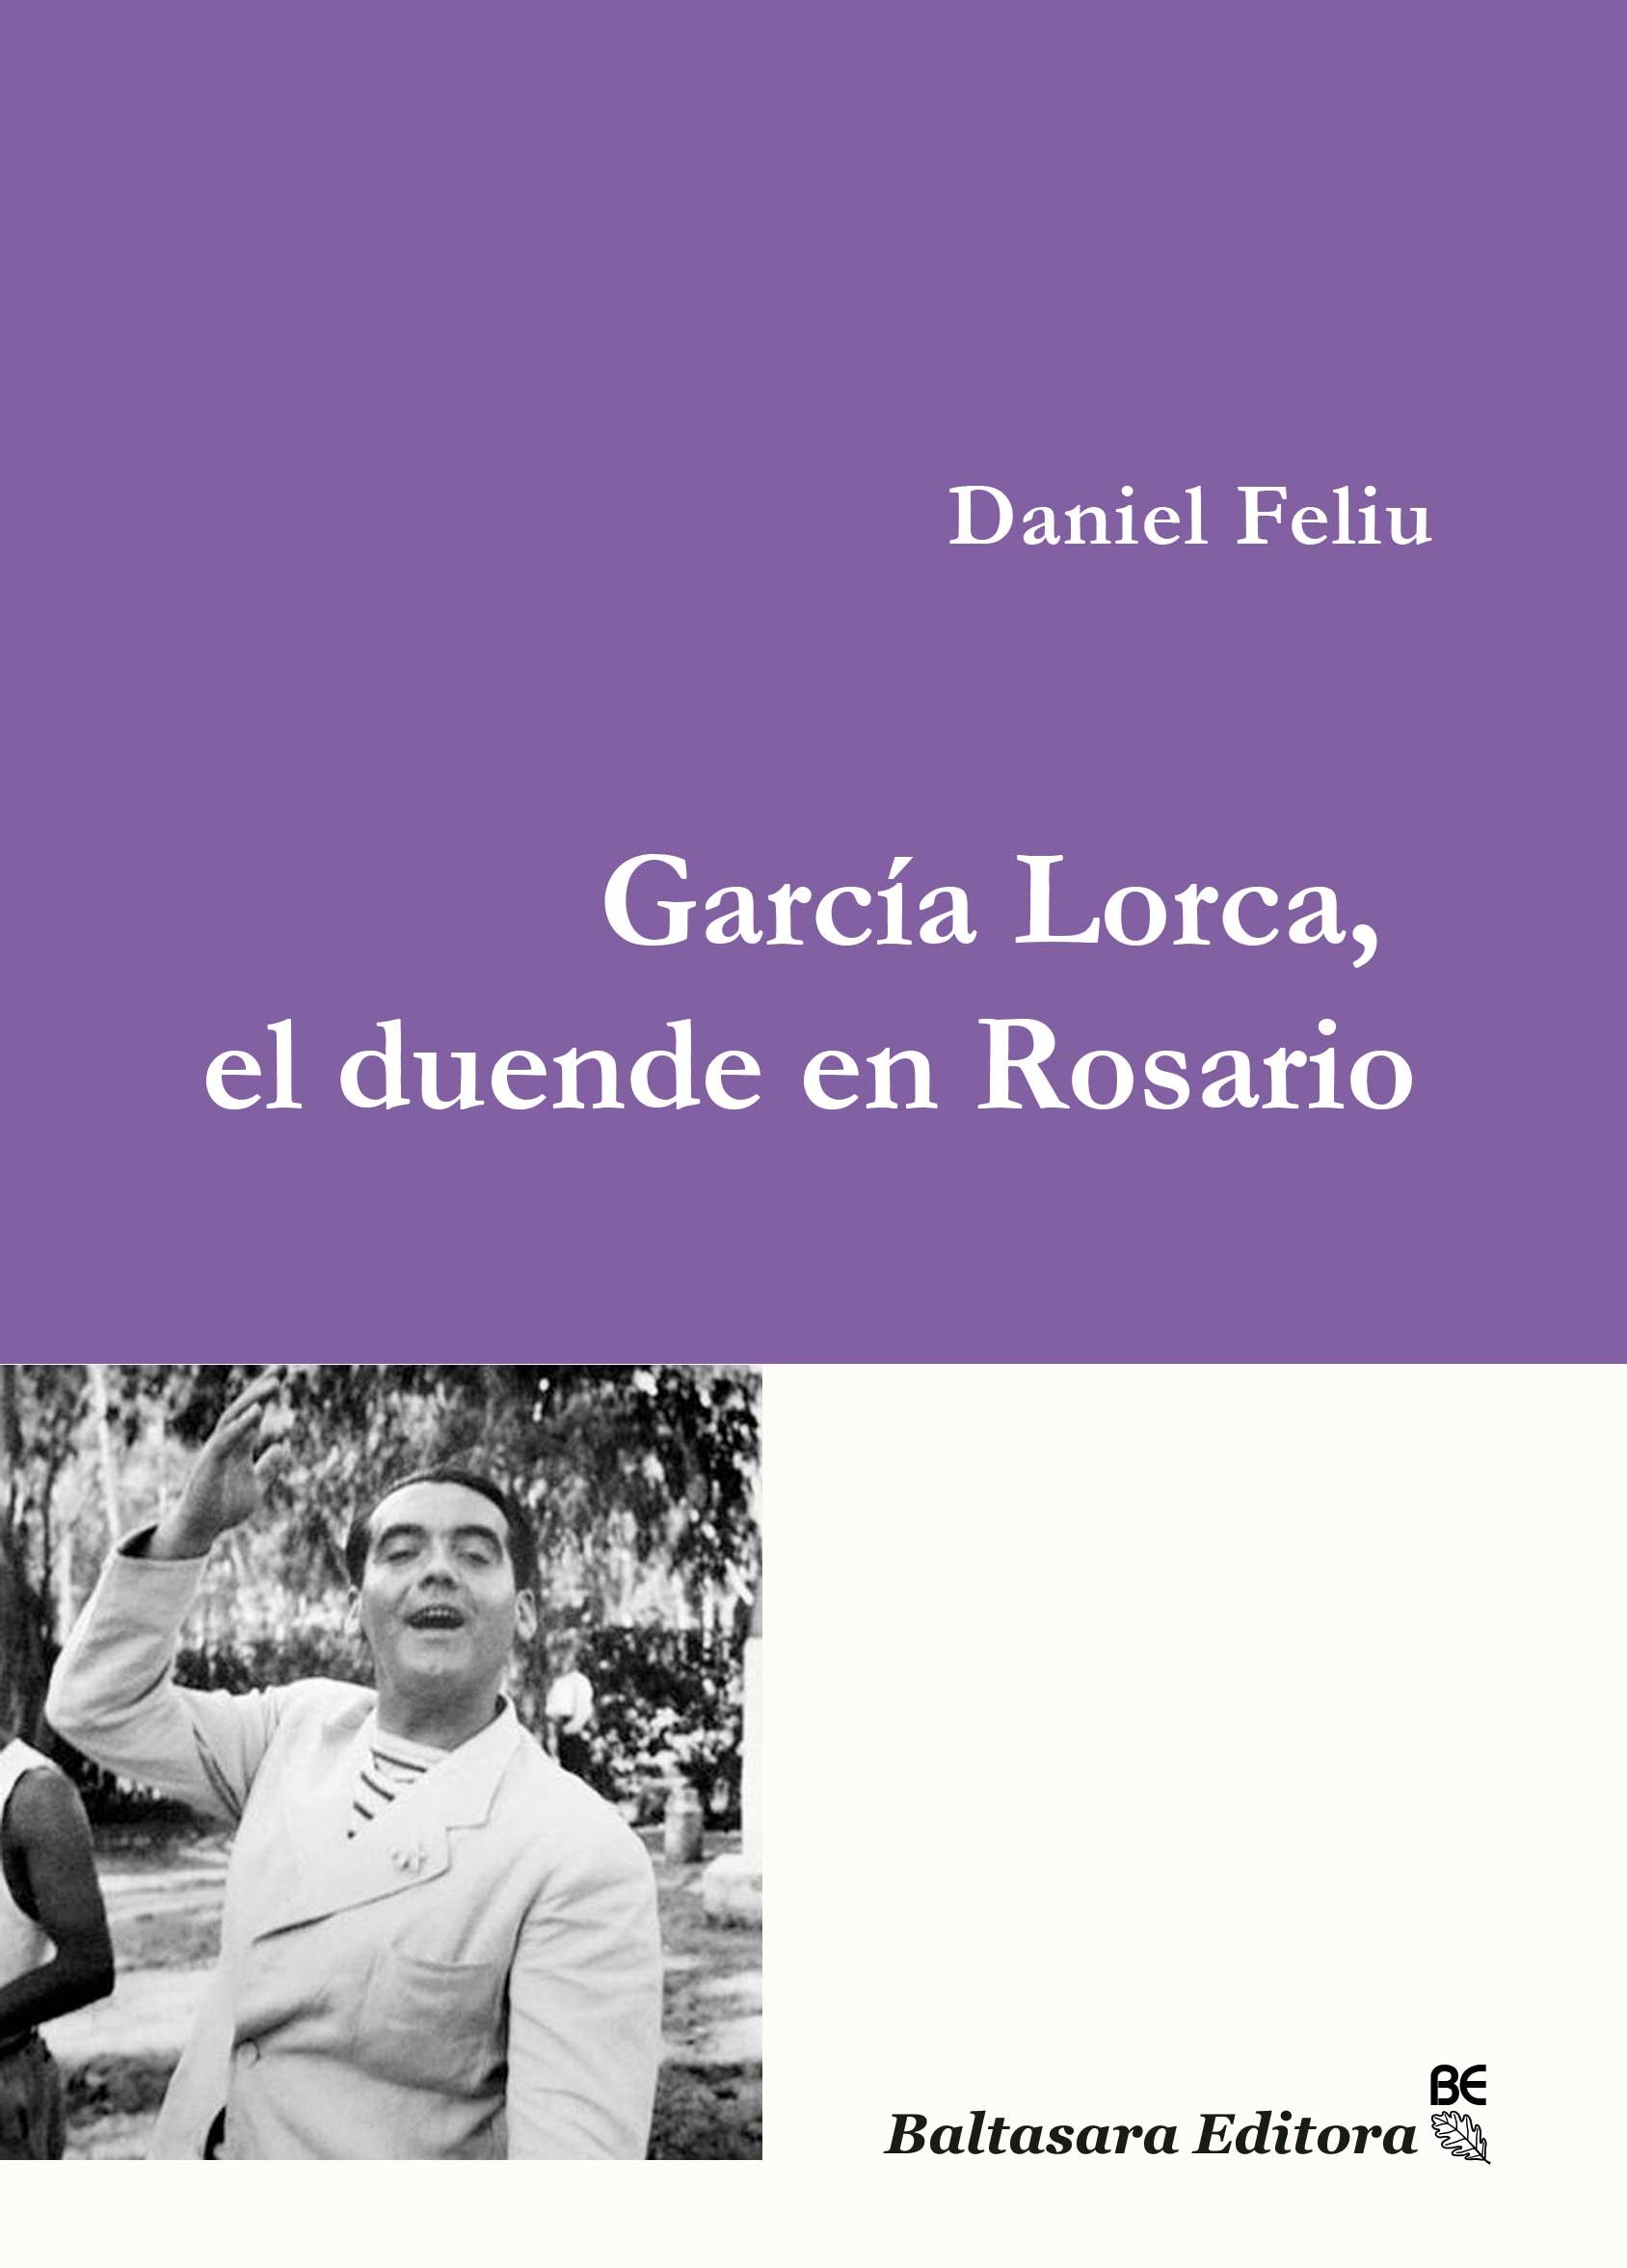 García Lorca, el duende en Rosario ____________